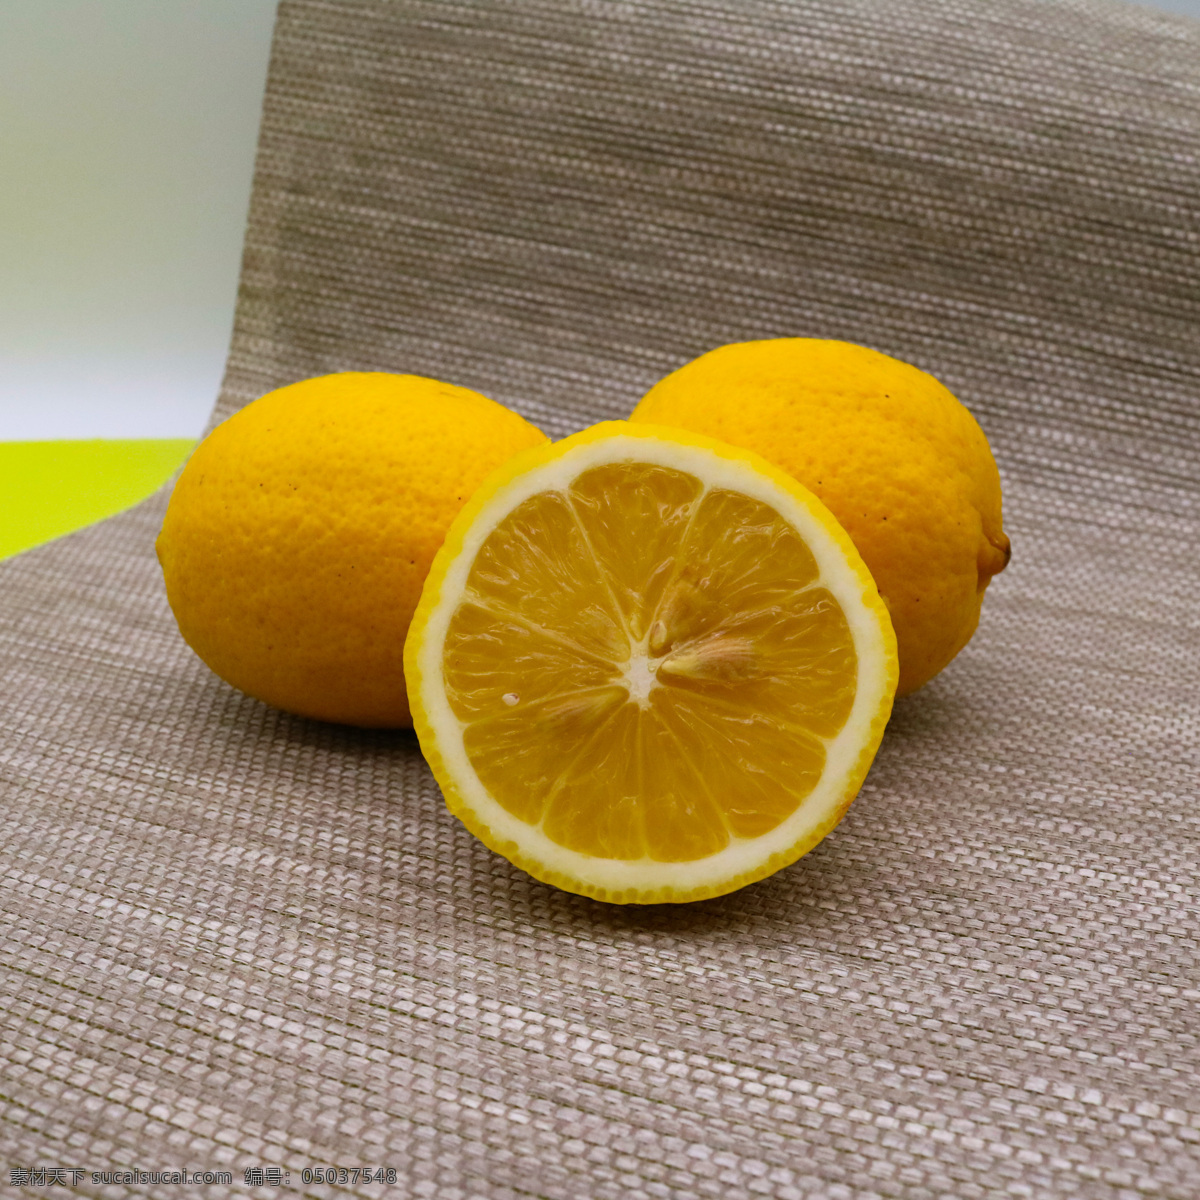 水果 柠檬 食物图片 广告 酸甜 食物 海报 画册 展架 电商 餐饮美食 传统美食